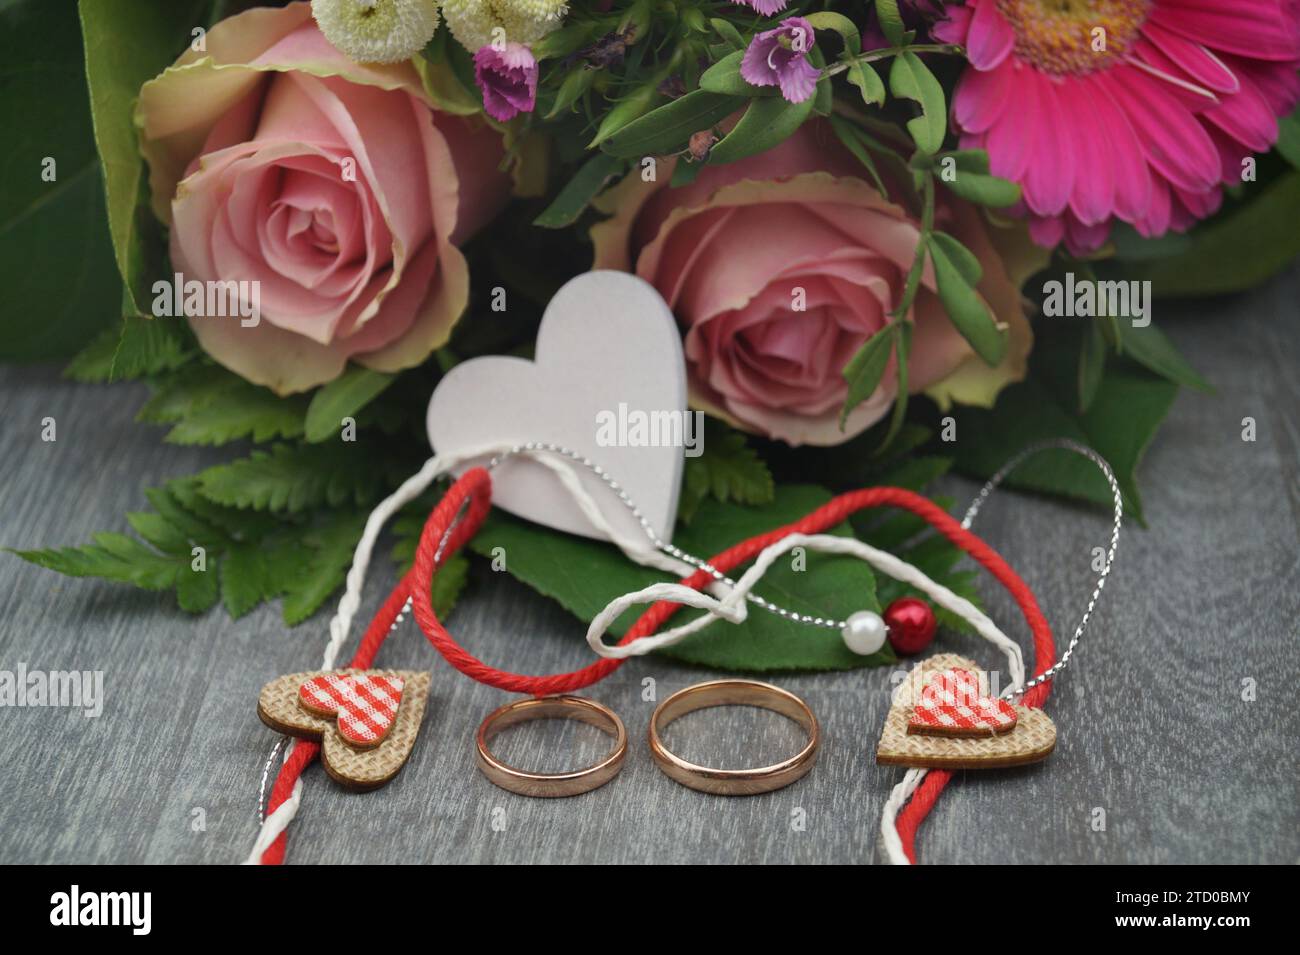 ramo fresco de flores con corazón de madera blanco, decoración de corazón pequeño y anillos de boda Foto de stock